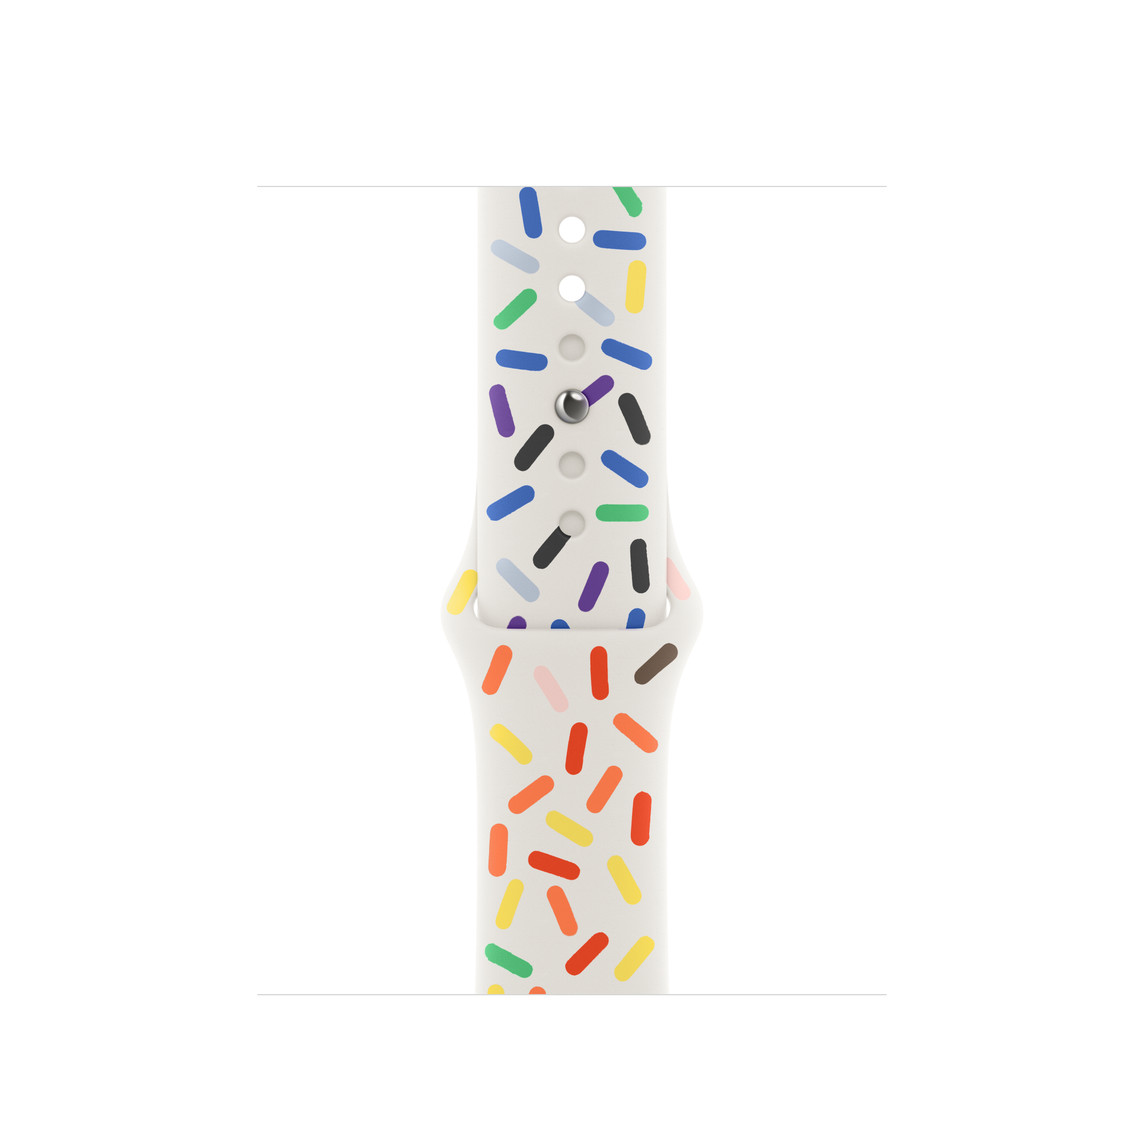 Pasek sportowy Pride Edition w kolorze białym z akcentami w postaci owalnych kształtów w różnych kolorach tęczy, wykonany z gładkiej gumy z fluoroelastomeru z zapięciem z napą i szlufką